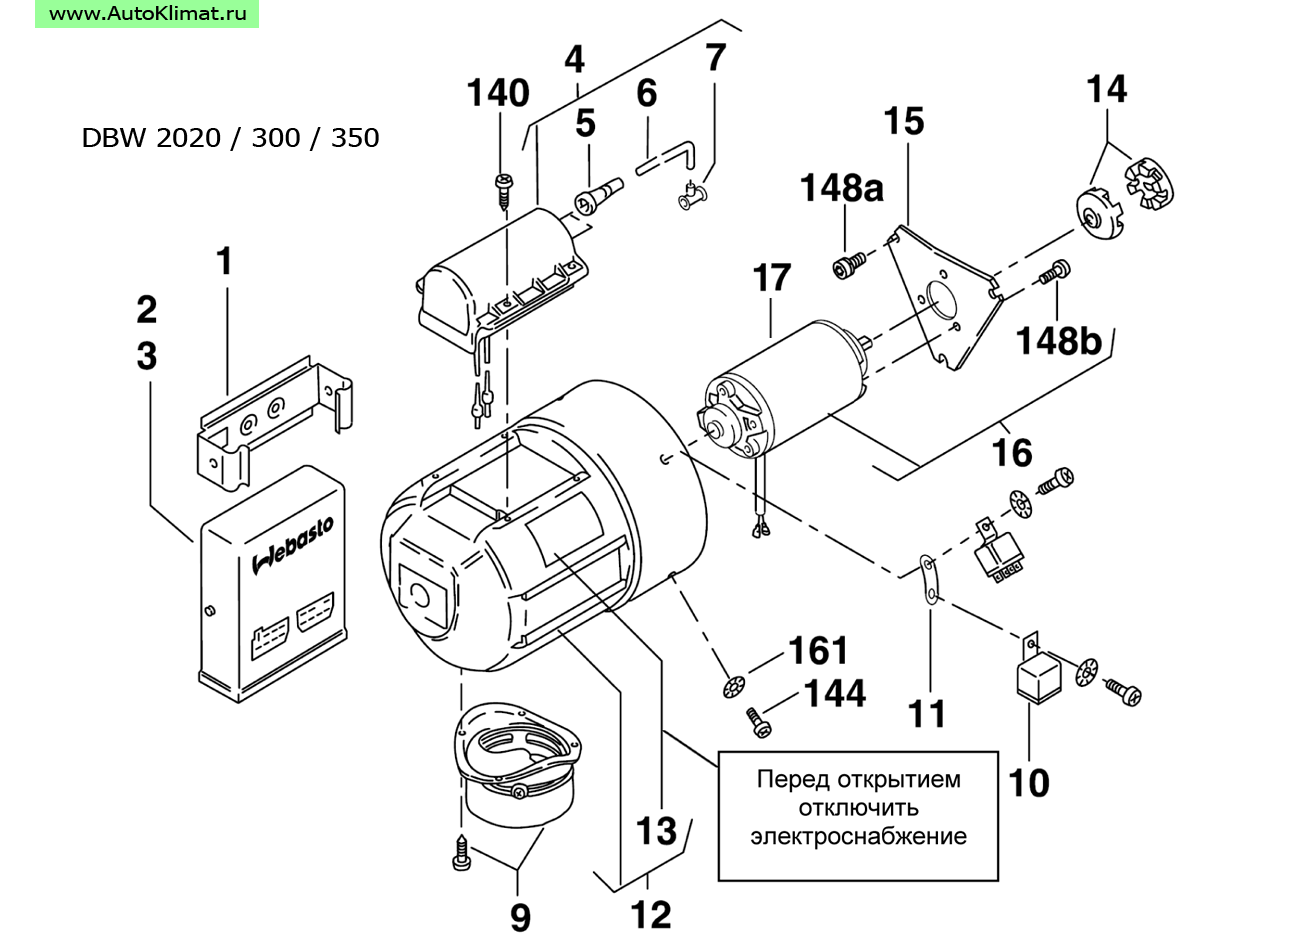 388807 Катушка зажигания высоковольтная 12В - автономный отопитель Вебасто (Webasto) DBW 2020/230/300/350